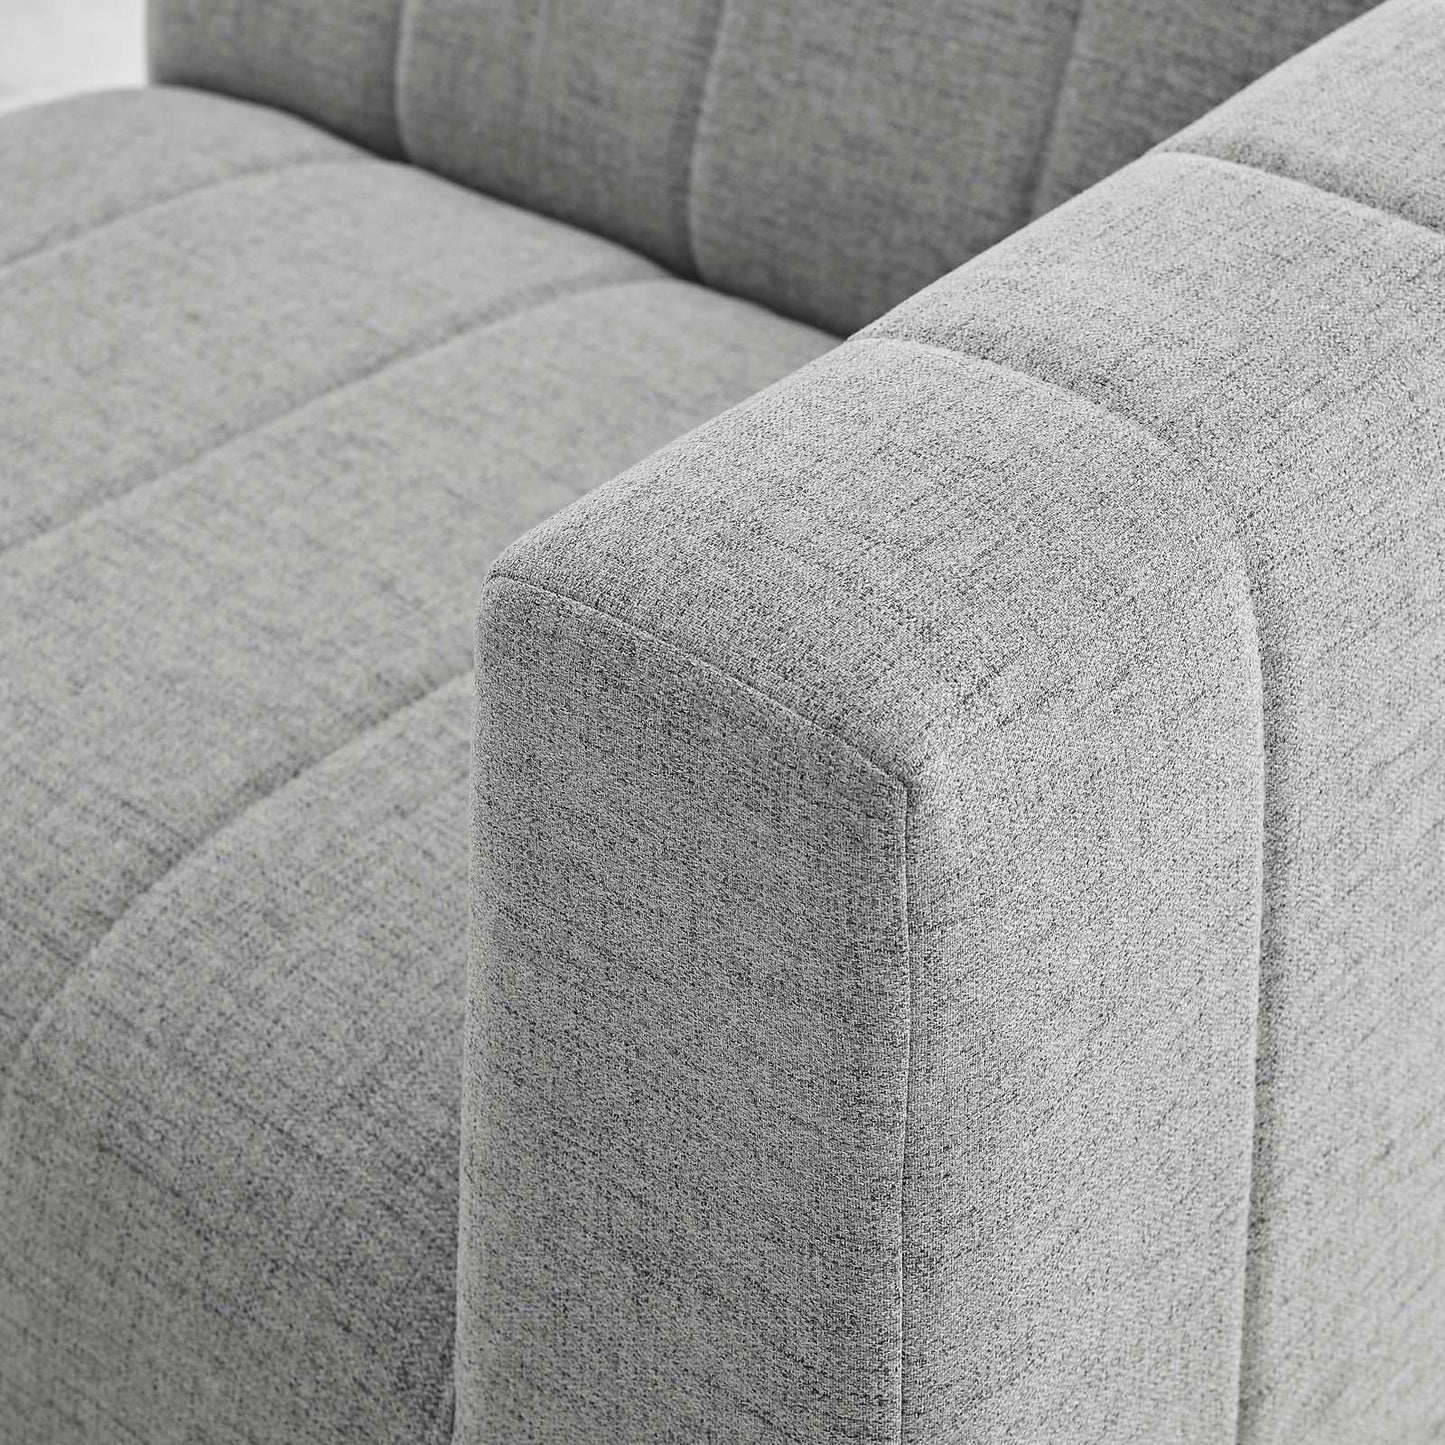 Bartlett Upholstered Fabric 5-Piece Sectional Sofa Light Gray EEI-4520-LGR